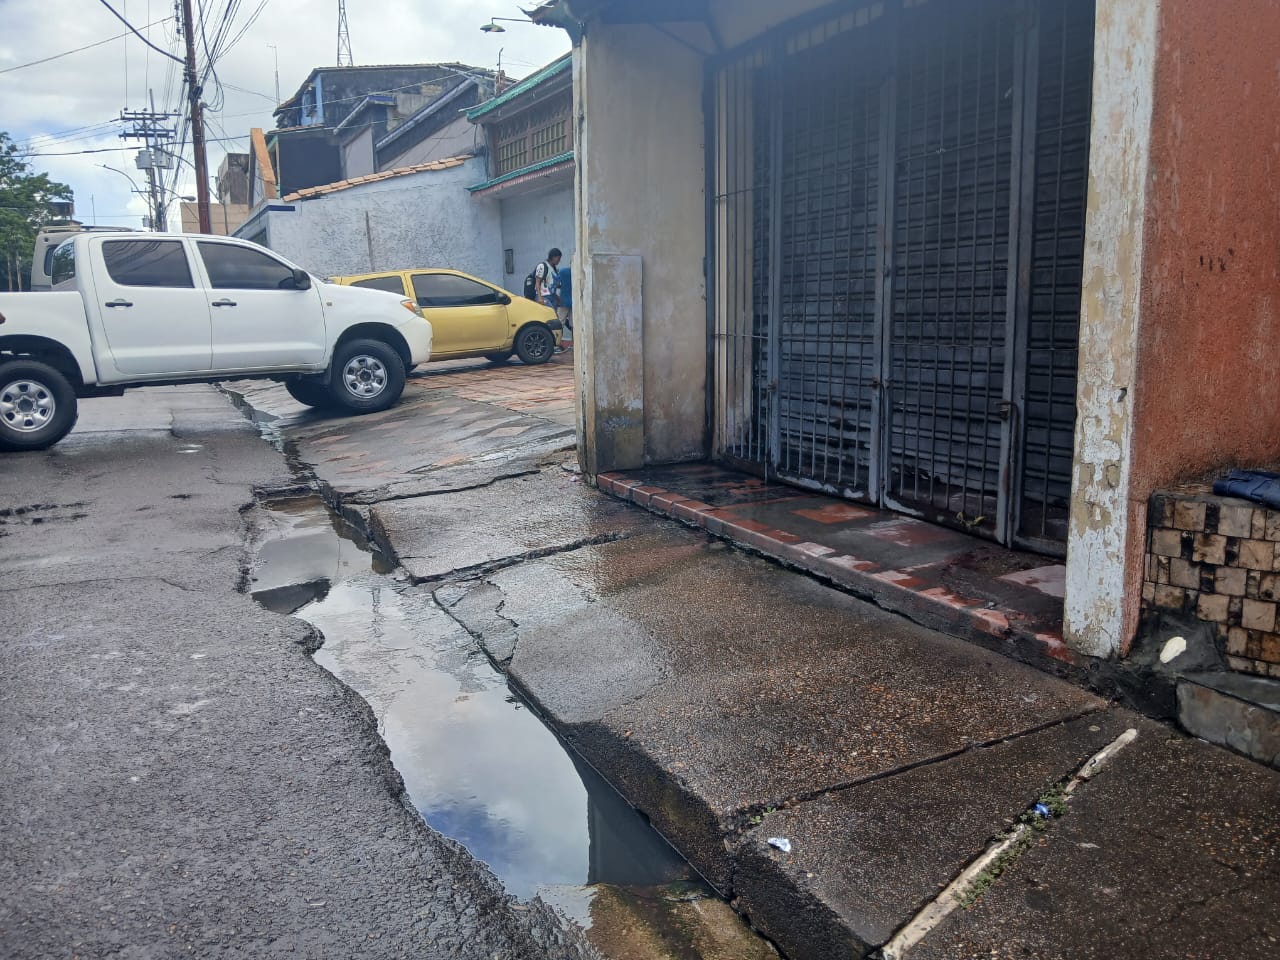 Comerciantes del mercado viejo denuncian presencia de agua servida en un local abandonado